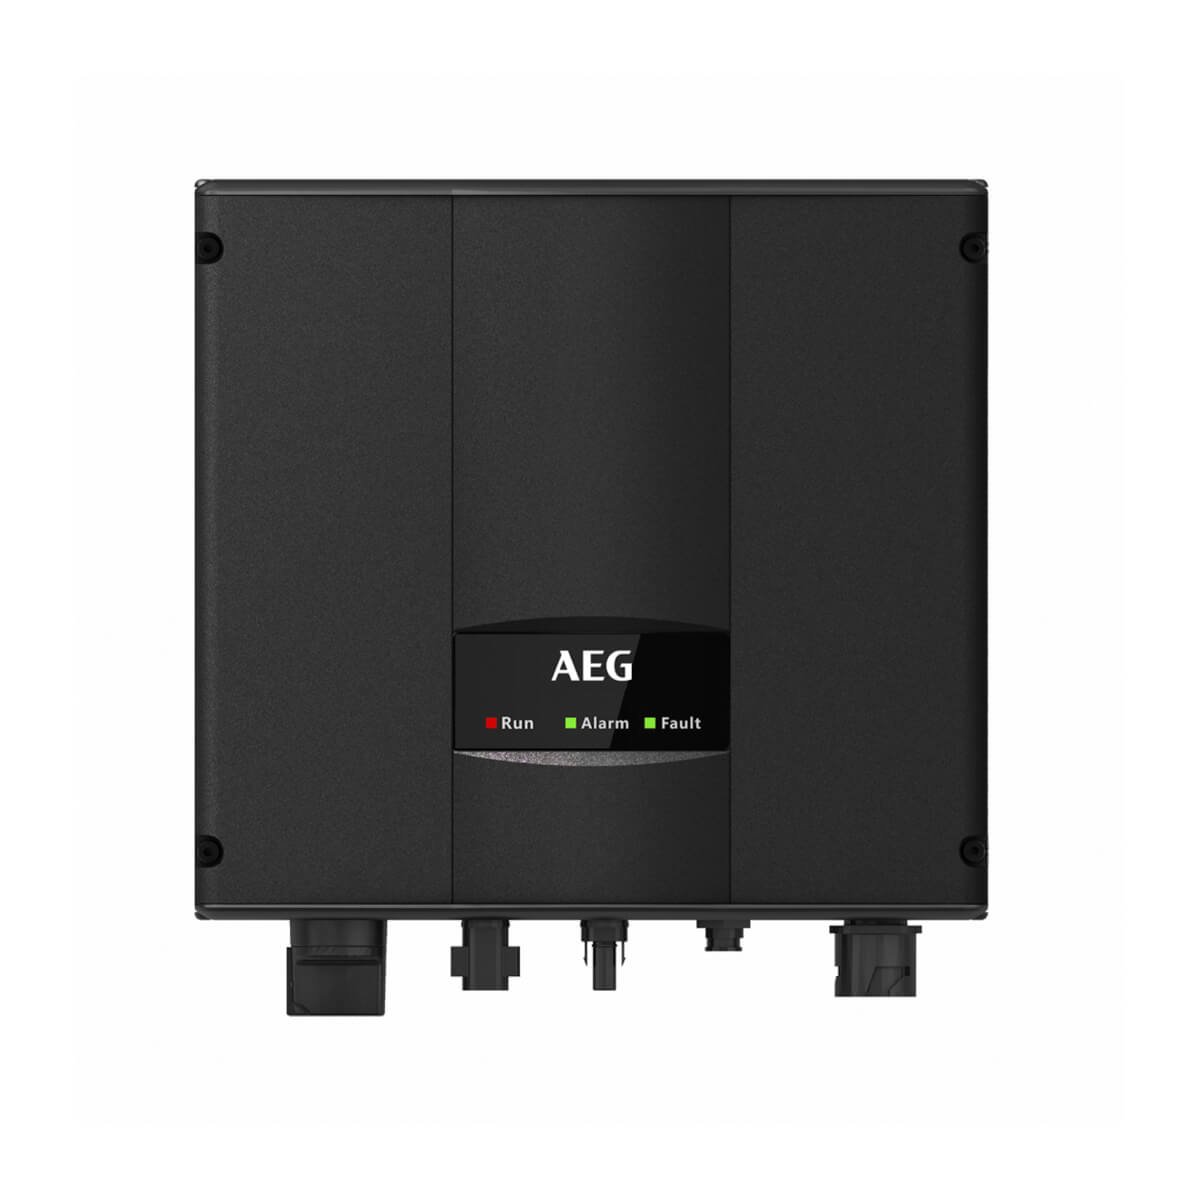 aeg 1.5kW inverter, aeg as-ir01 1.5kW inverter, aeg as-ir01-1500 inverter, aeg as-ir01-1500, aeg as-ir01 1.5kW, AEG 1.5 KW